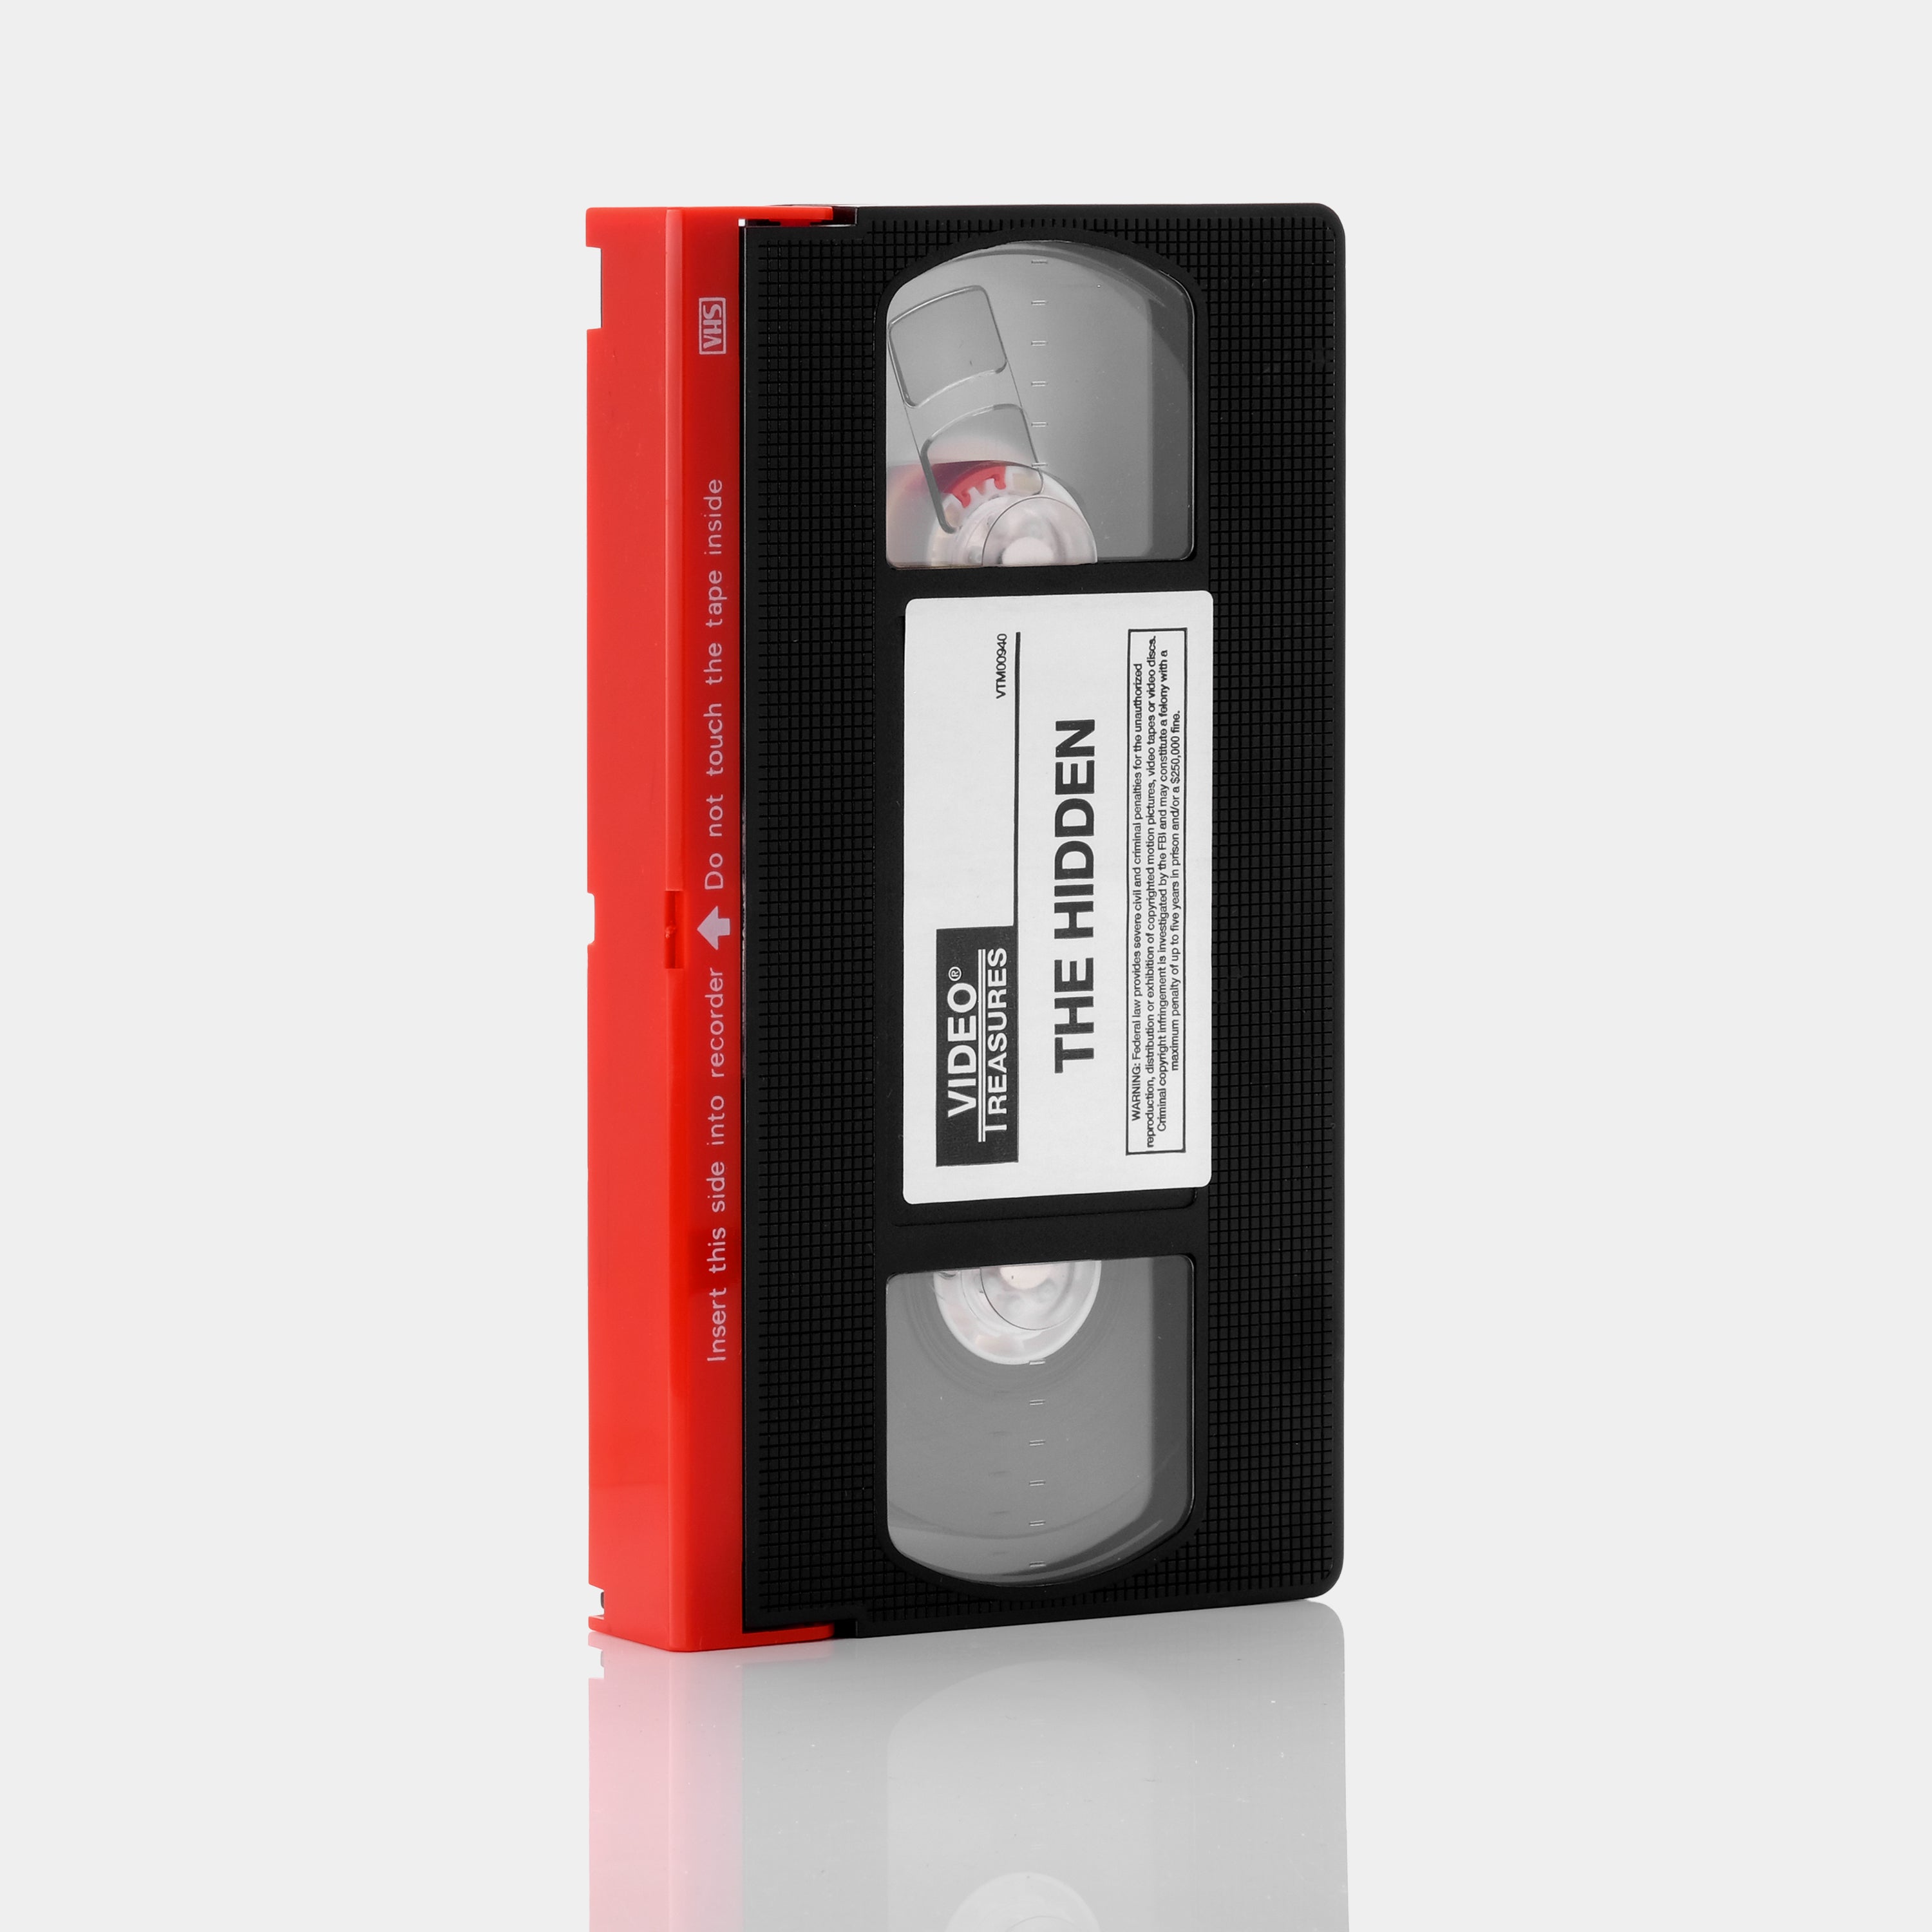 The Hidden VHS Tape